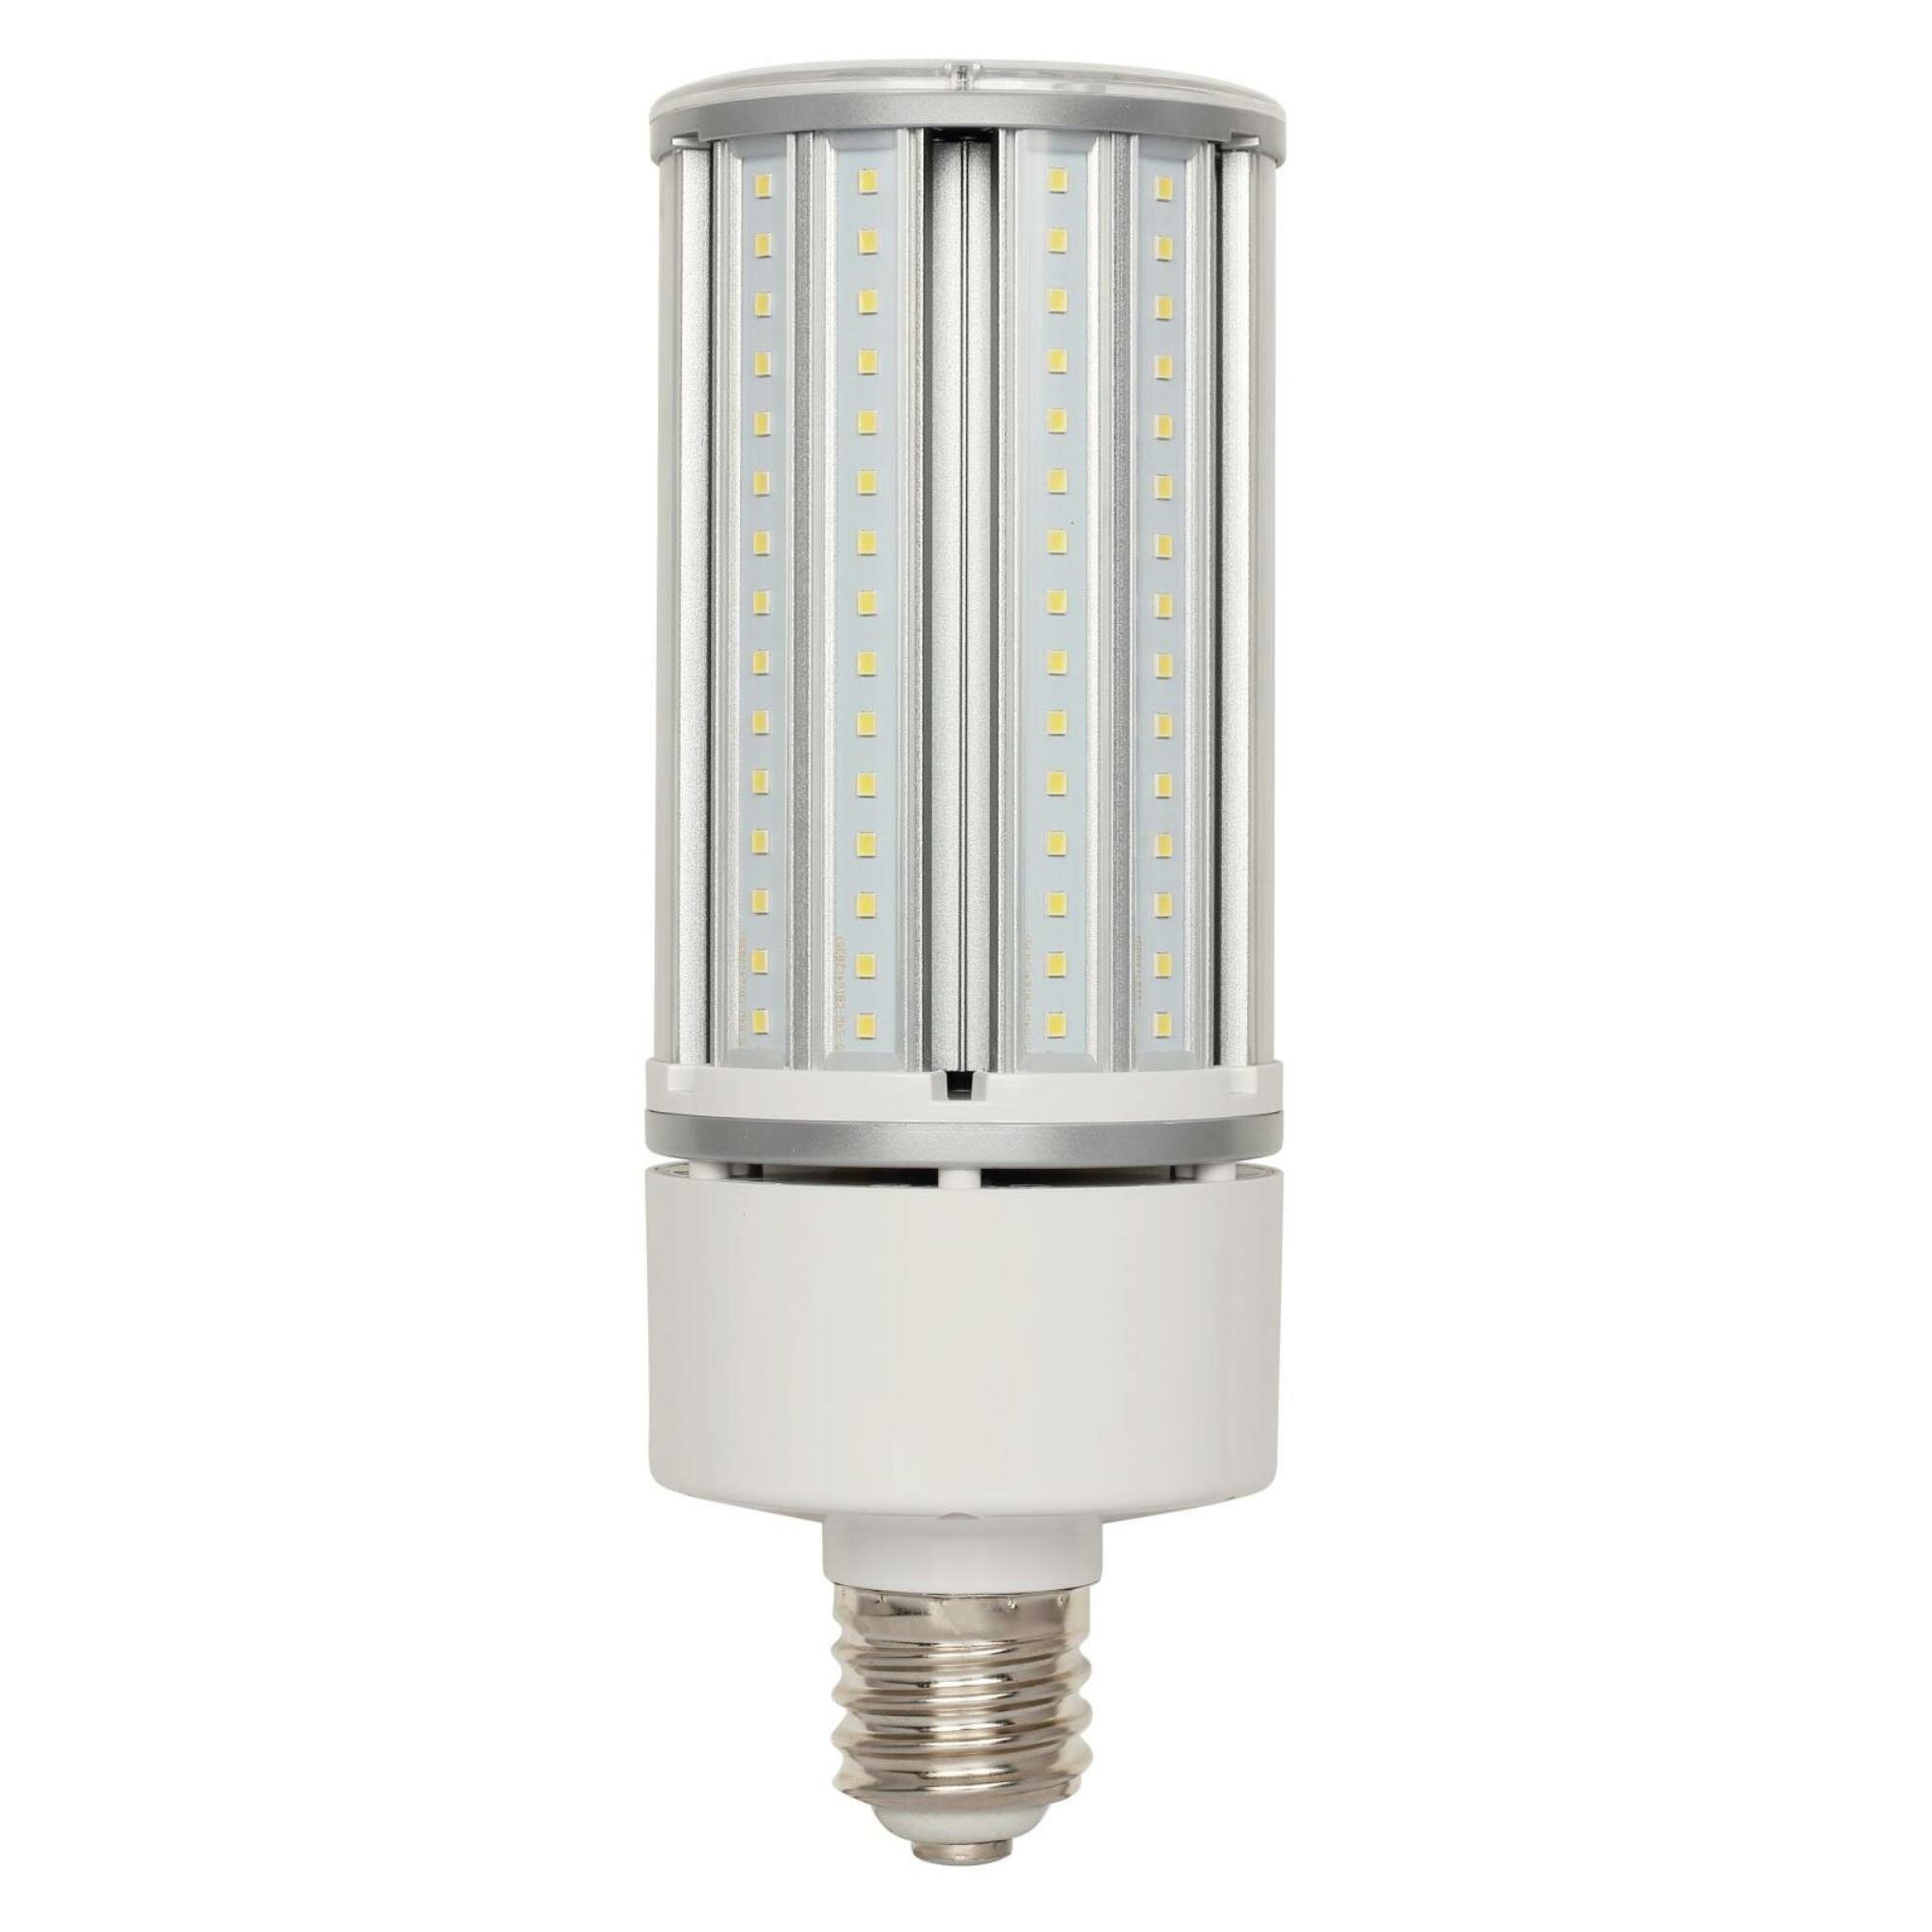 Details about   LED Corn Light Bulb 40W 60W 75W 100W 200W 300W Eq Warm Cool Daylight E26 